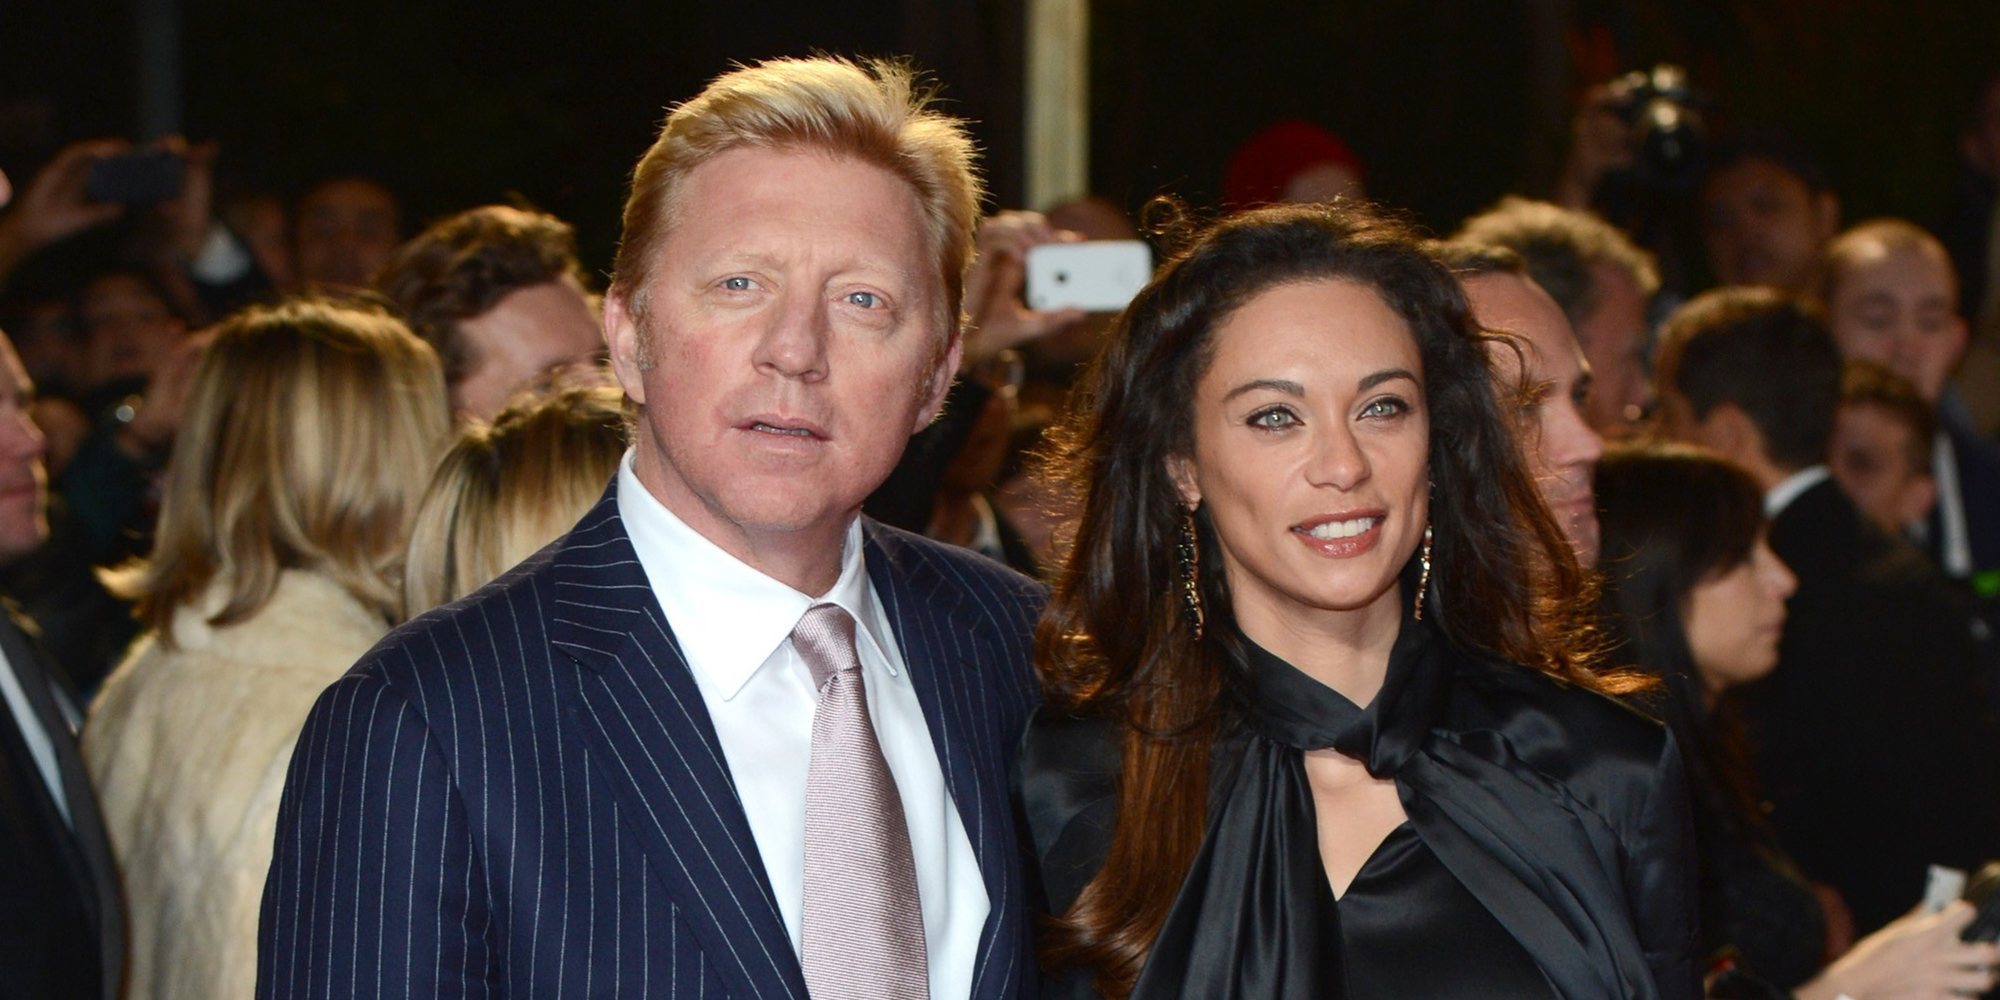 Boris Becker reaparece tras confirmarse su divorcio de Lilly Kerssenberg tras 9 años de matrimonio